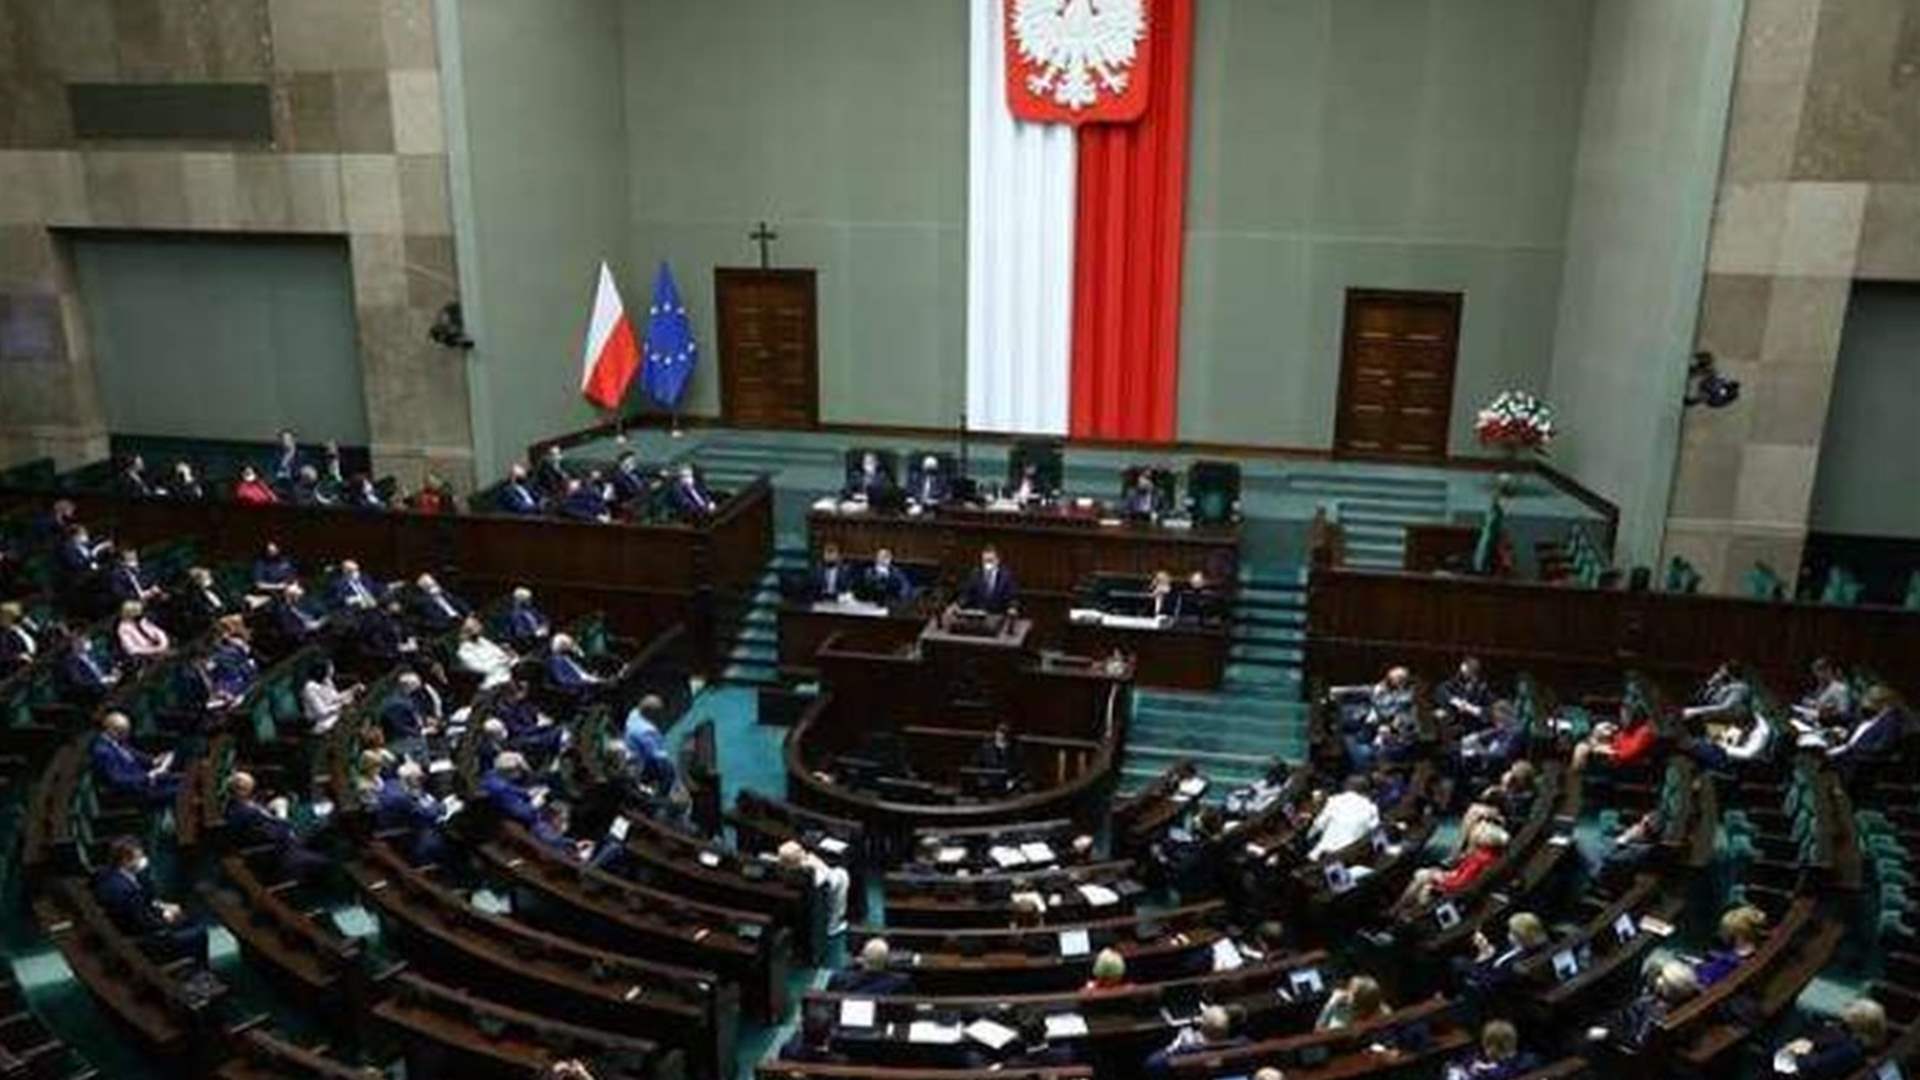 البرلمان البولندي يقر تشكيل لجنة تحقيق بالنفوذ الروسي في البلاد